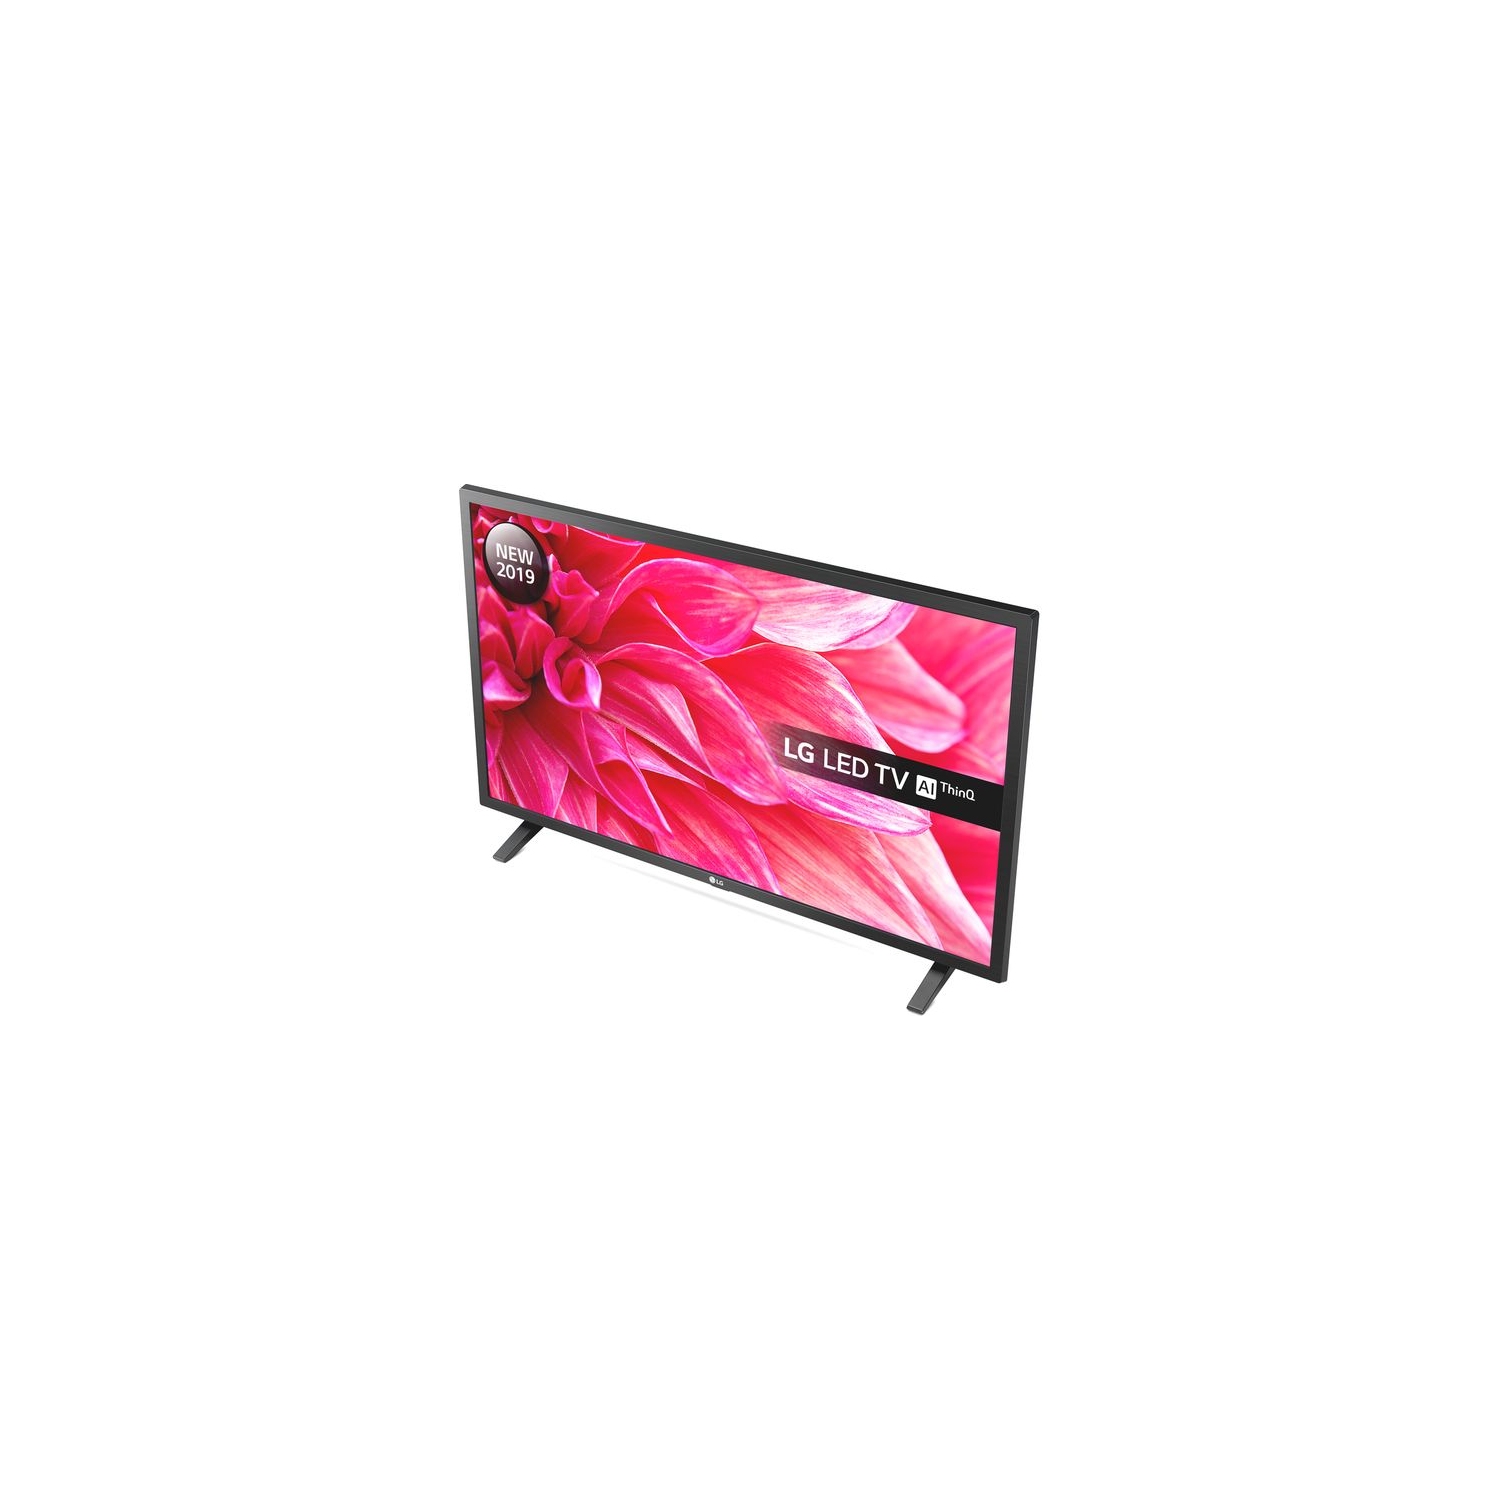 LG TV LED Full HD Smart TV 32 - 32LM6300PLA